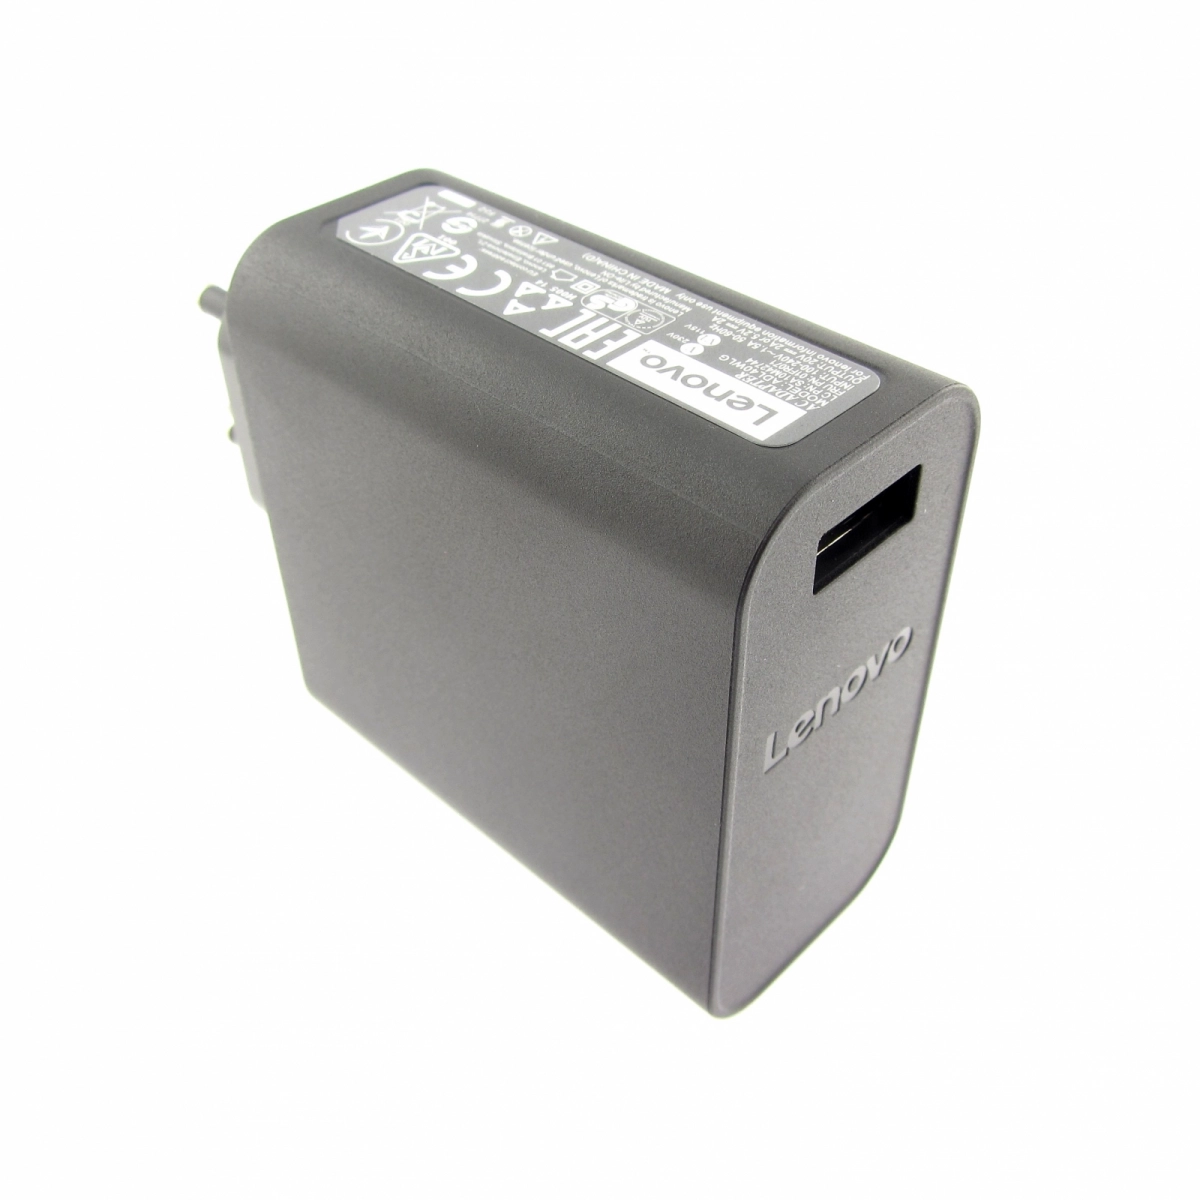 Original Netzteil für LENOVO ADL40WCA 36200579, 20V, 2A, Stecker USB, ohne USB-Kabel